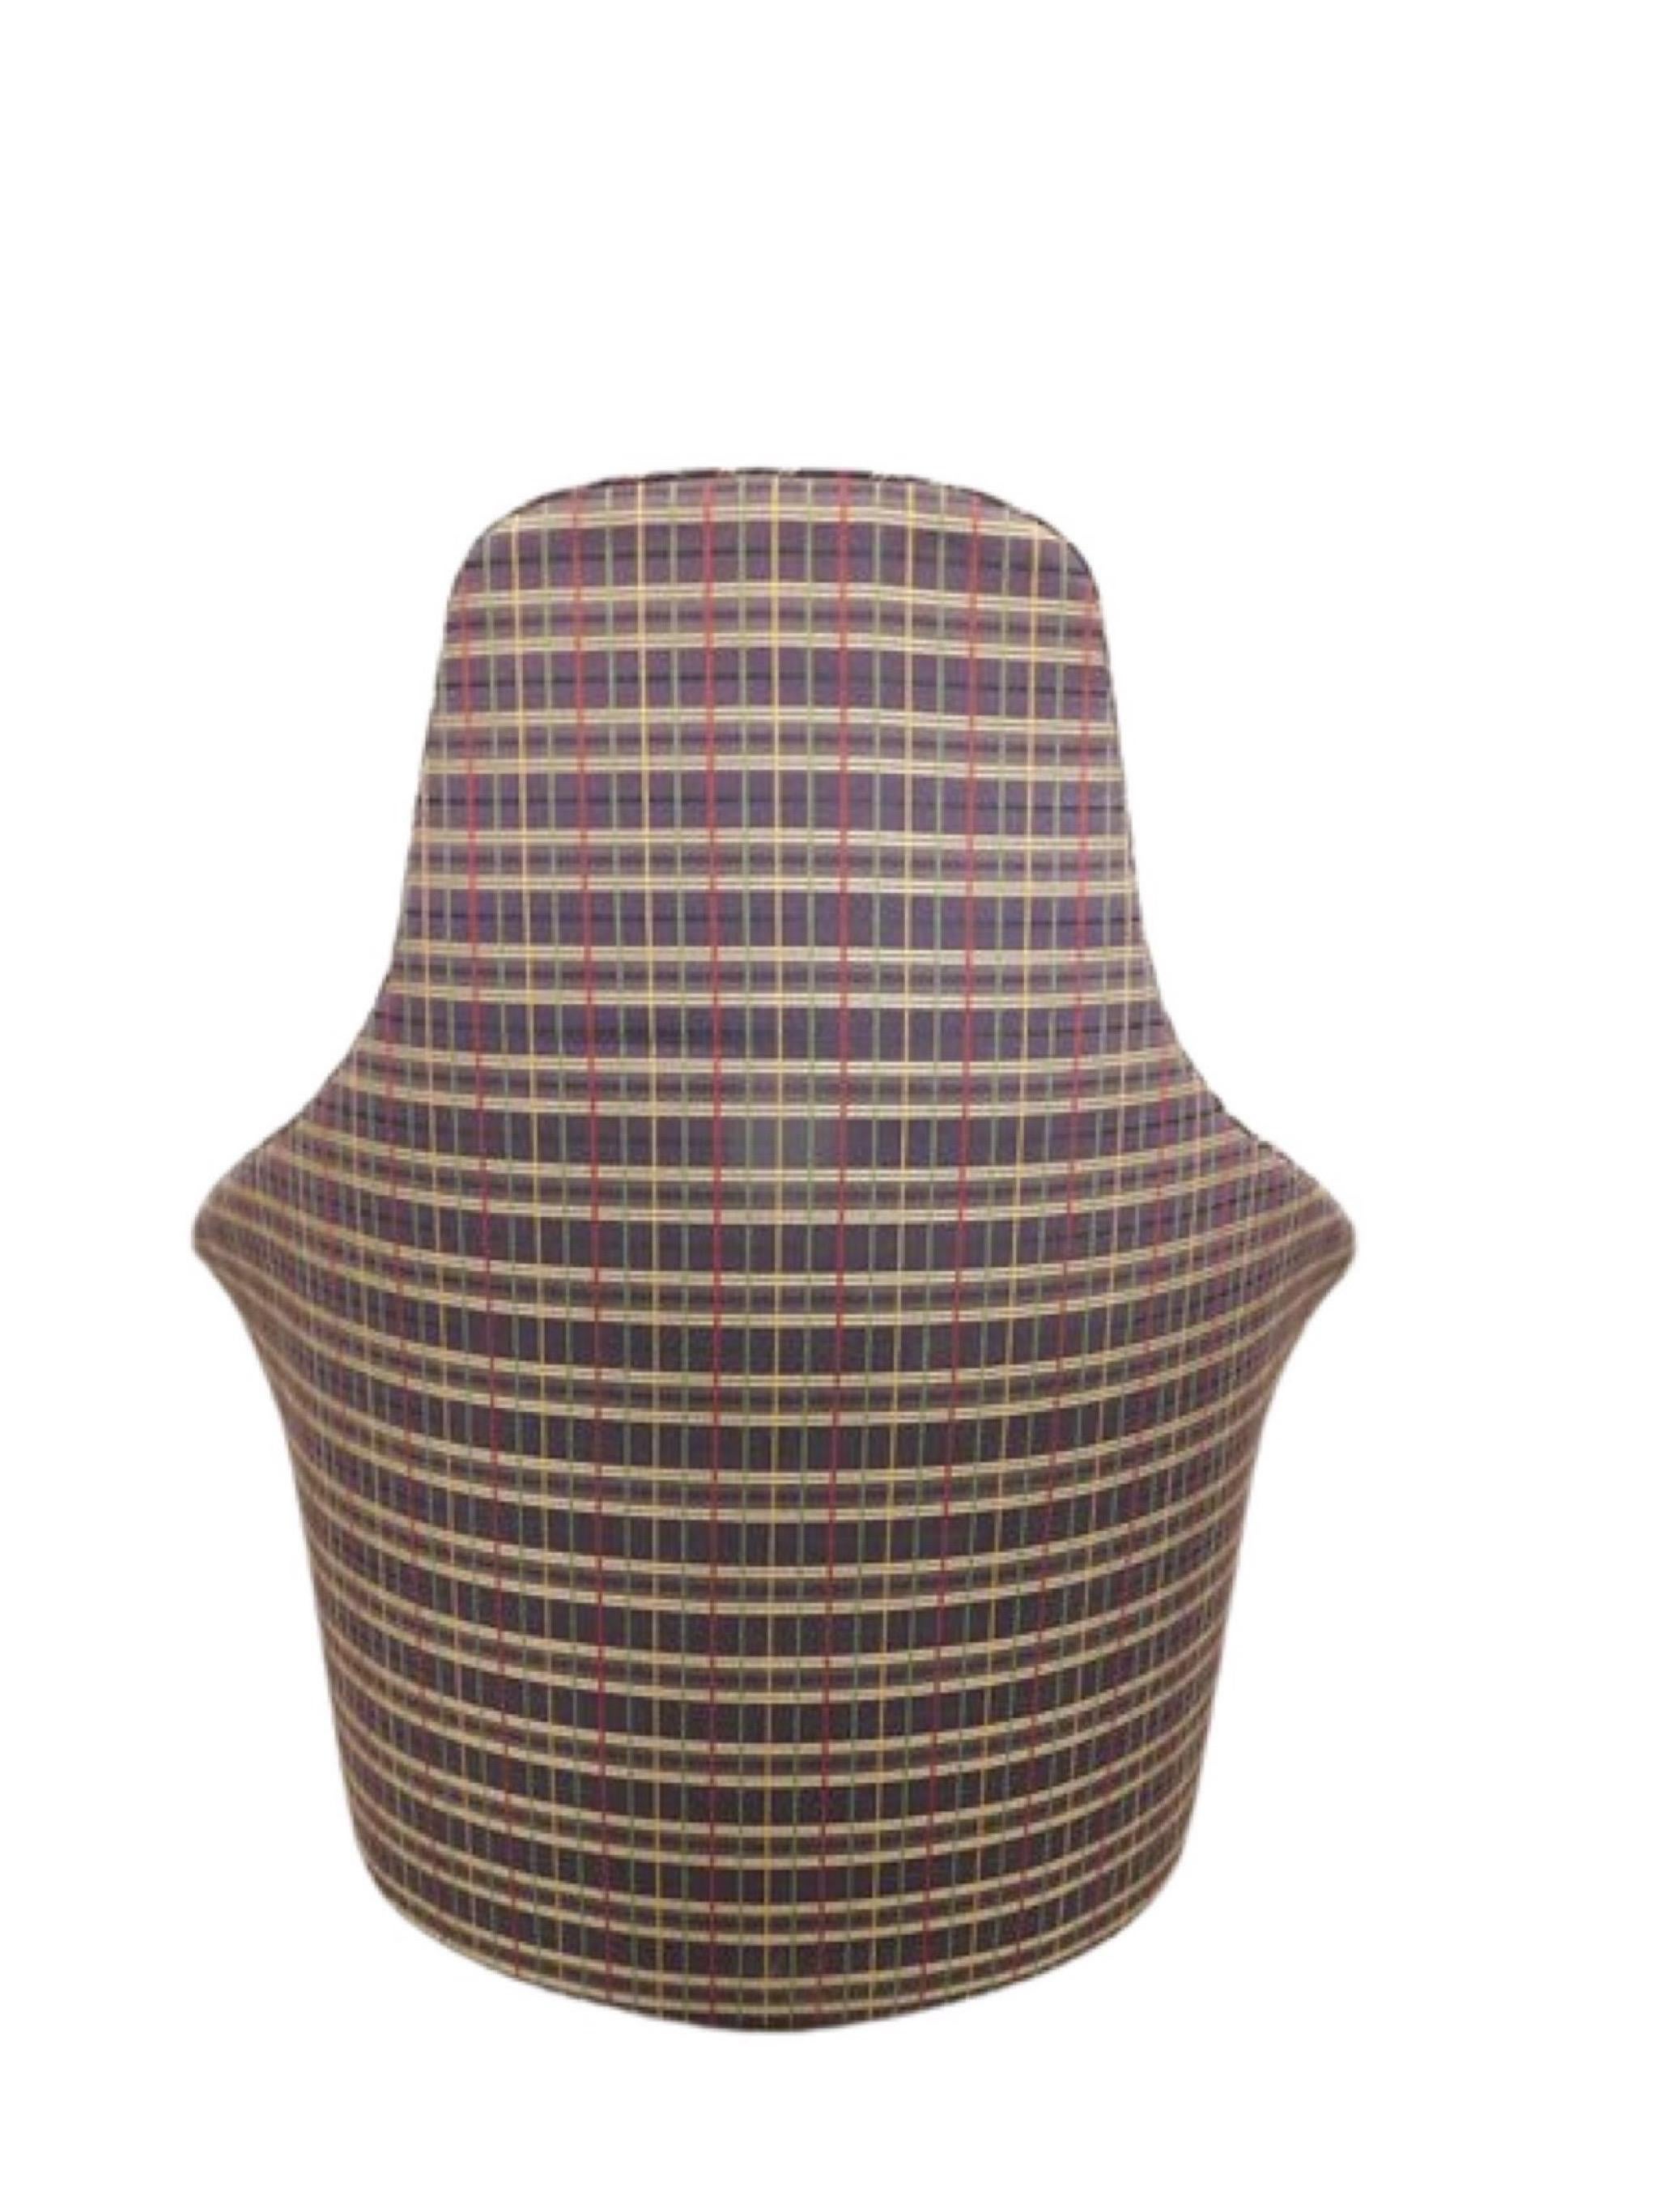 Adrian Pearsall pour Craft Associates, vers 1970. Des meubles qui sont de l'art. Les bras s'inclinent doucement comme une tulipe en fleur. Un coussin rembourré descend le long du bord du dossier, ajoutant une bordure sculpturale et confortable à la